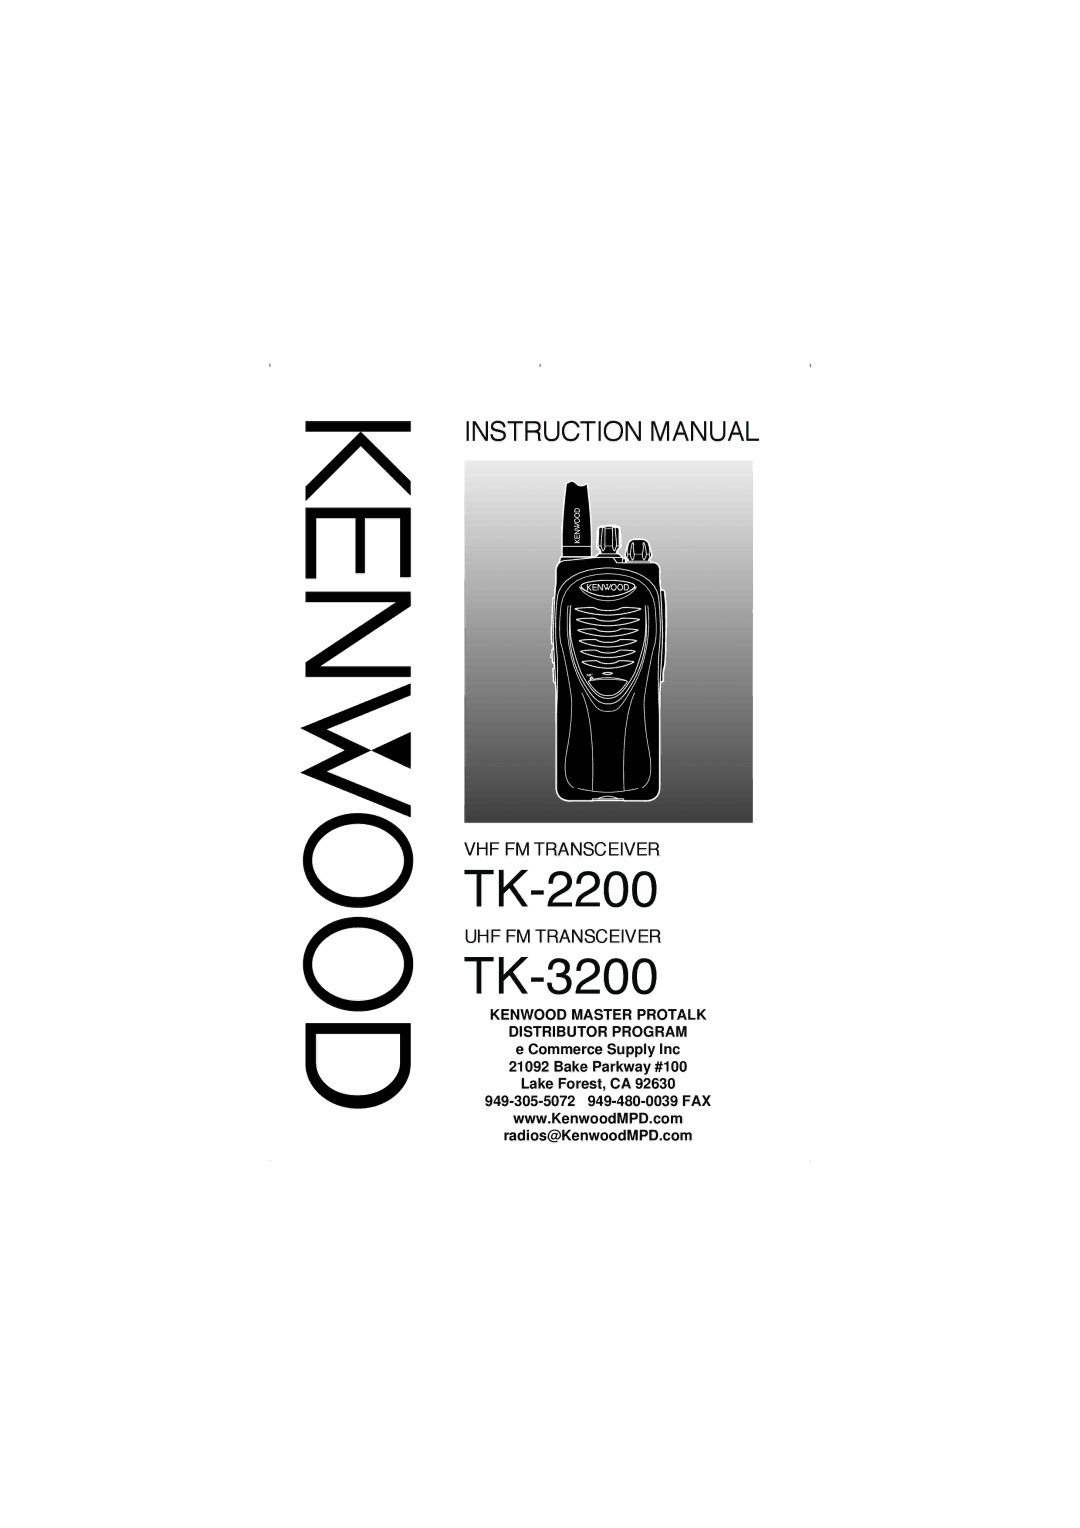 Kenwood TK-2200, TK-3200 instruction manual 